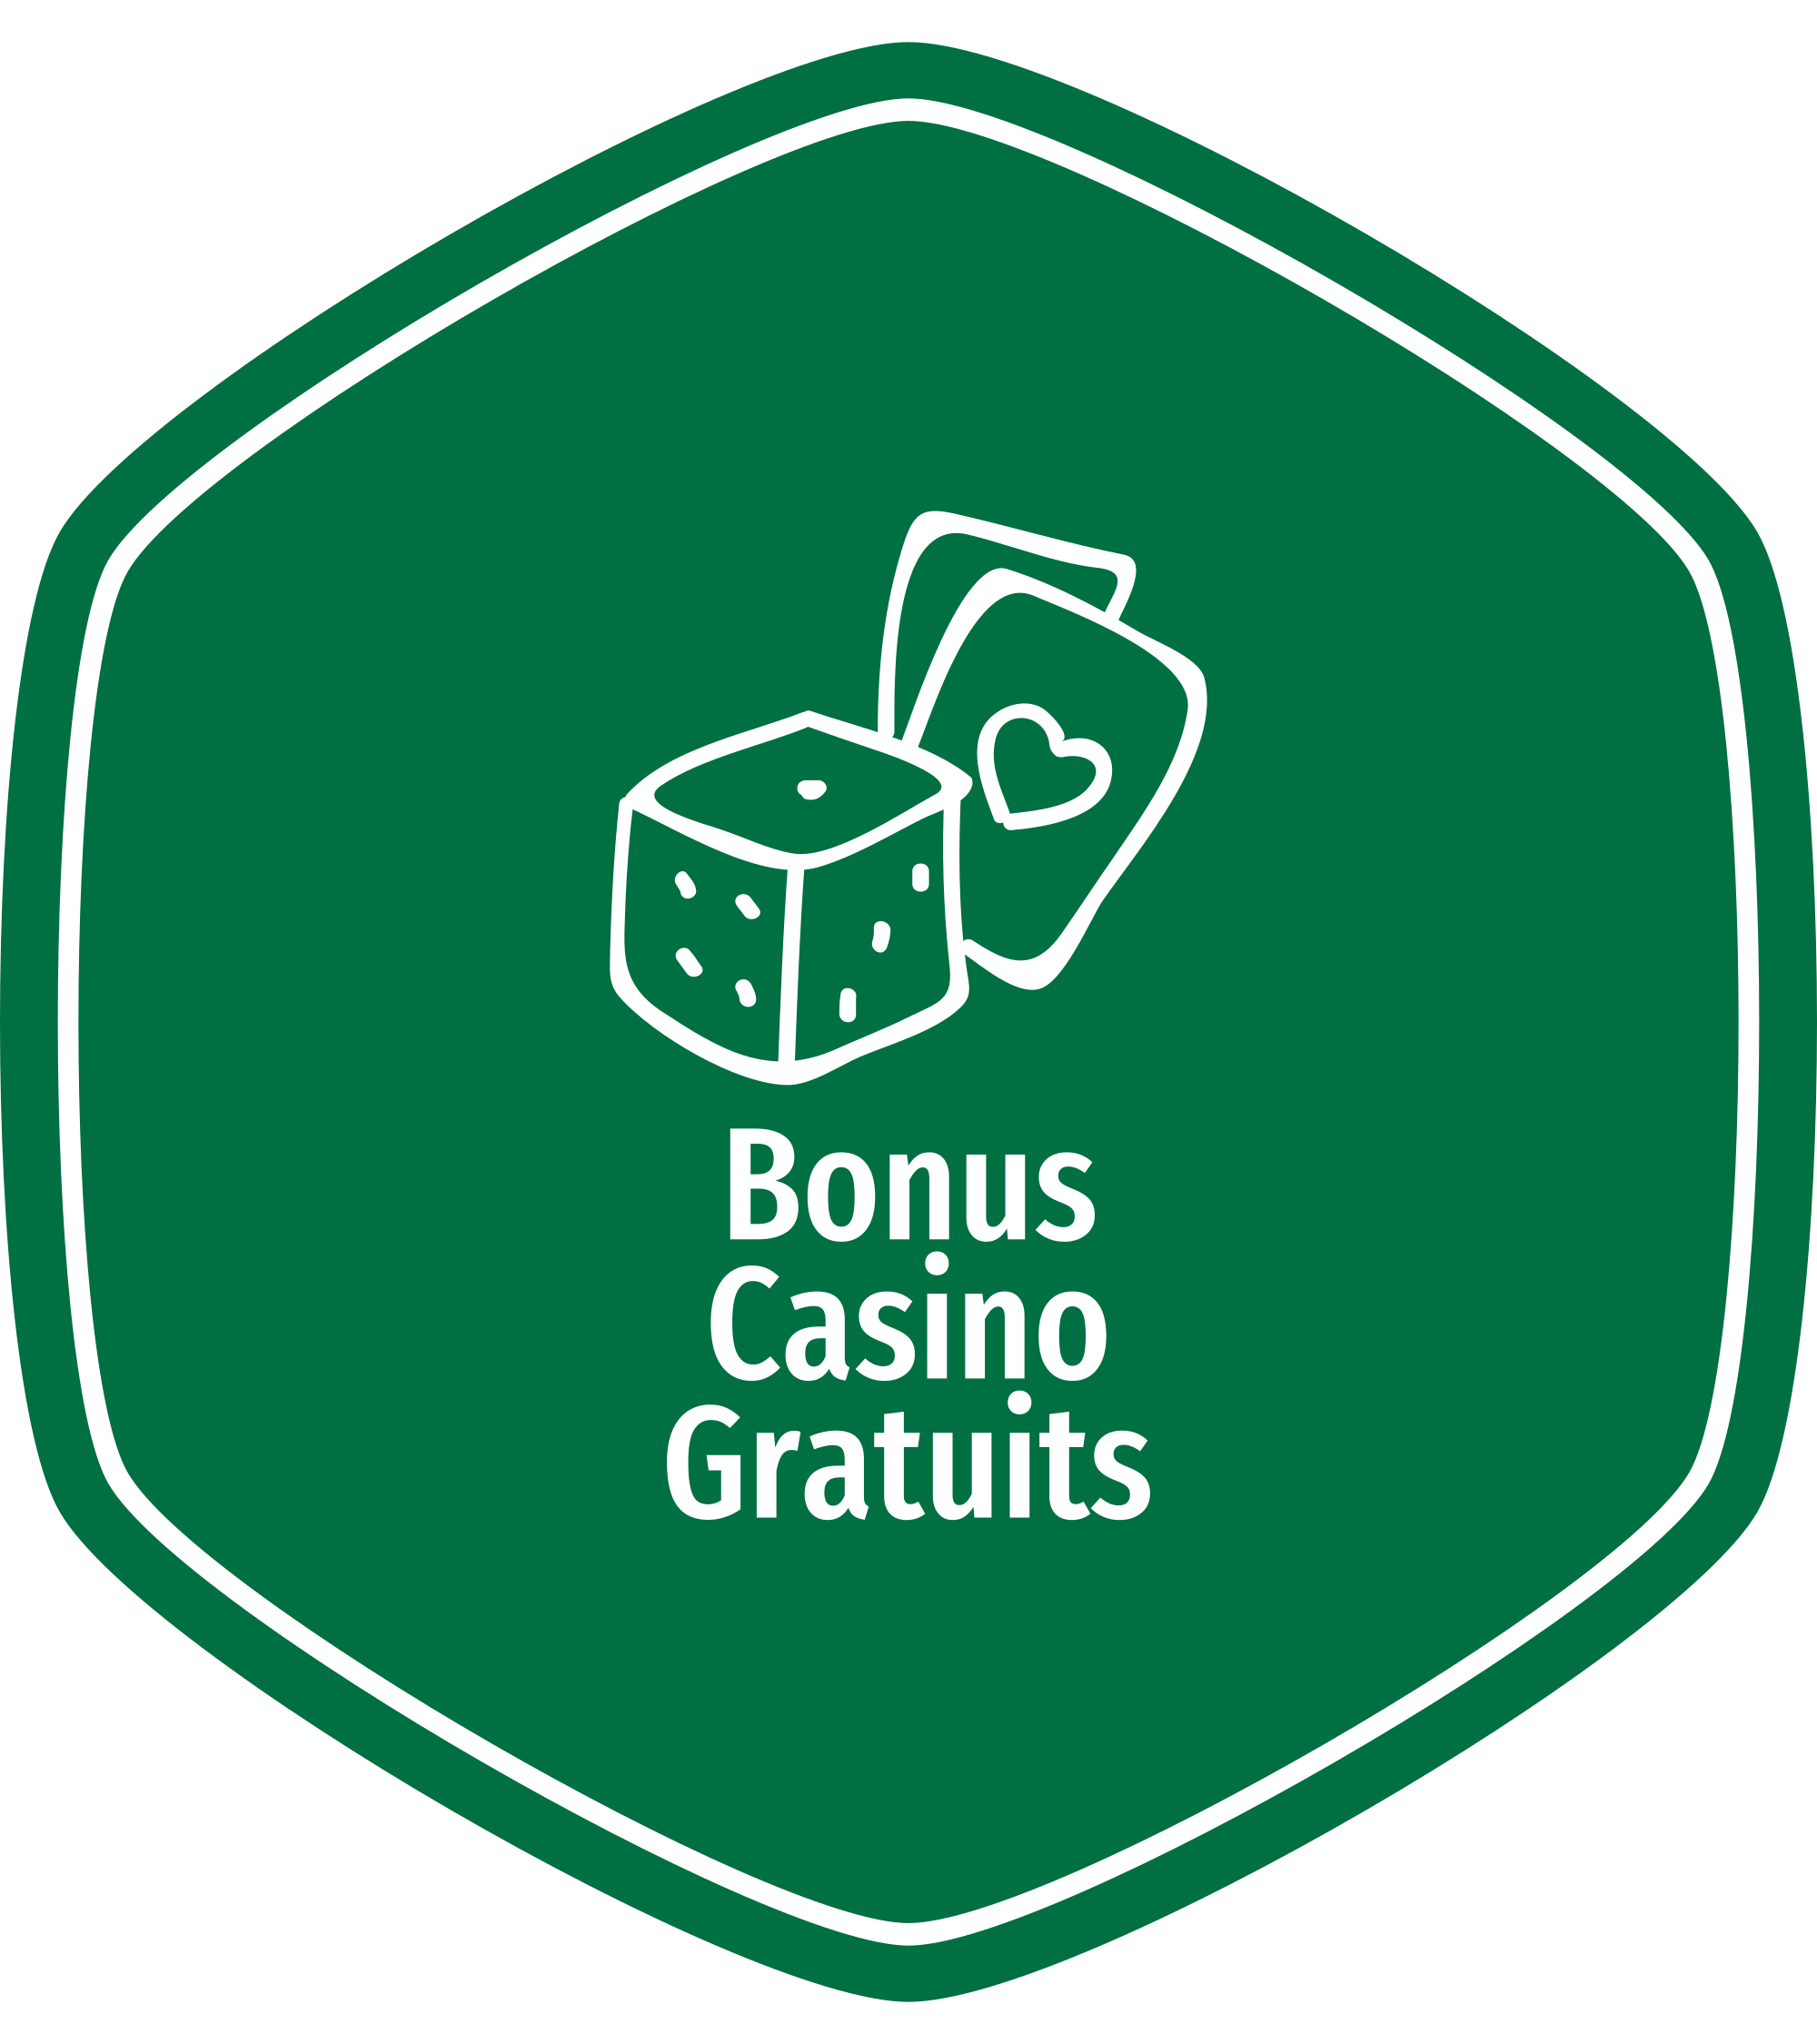 Bonus Casino Gratuits